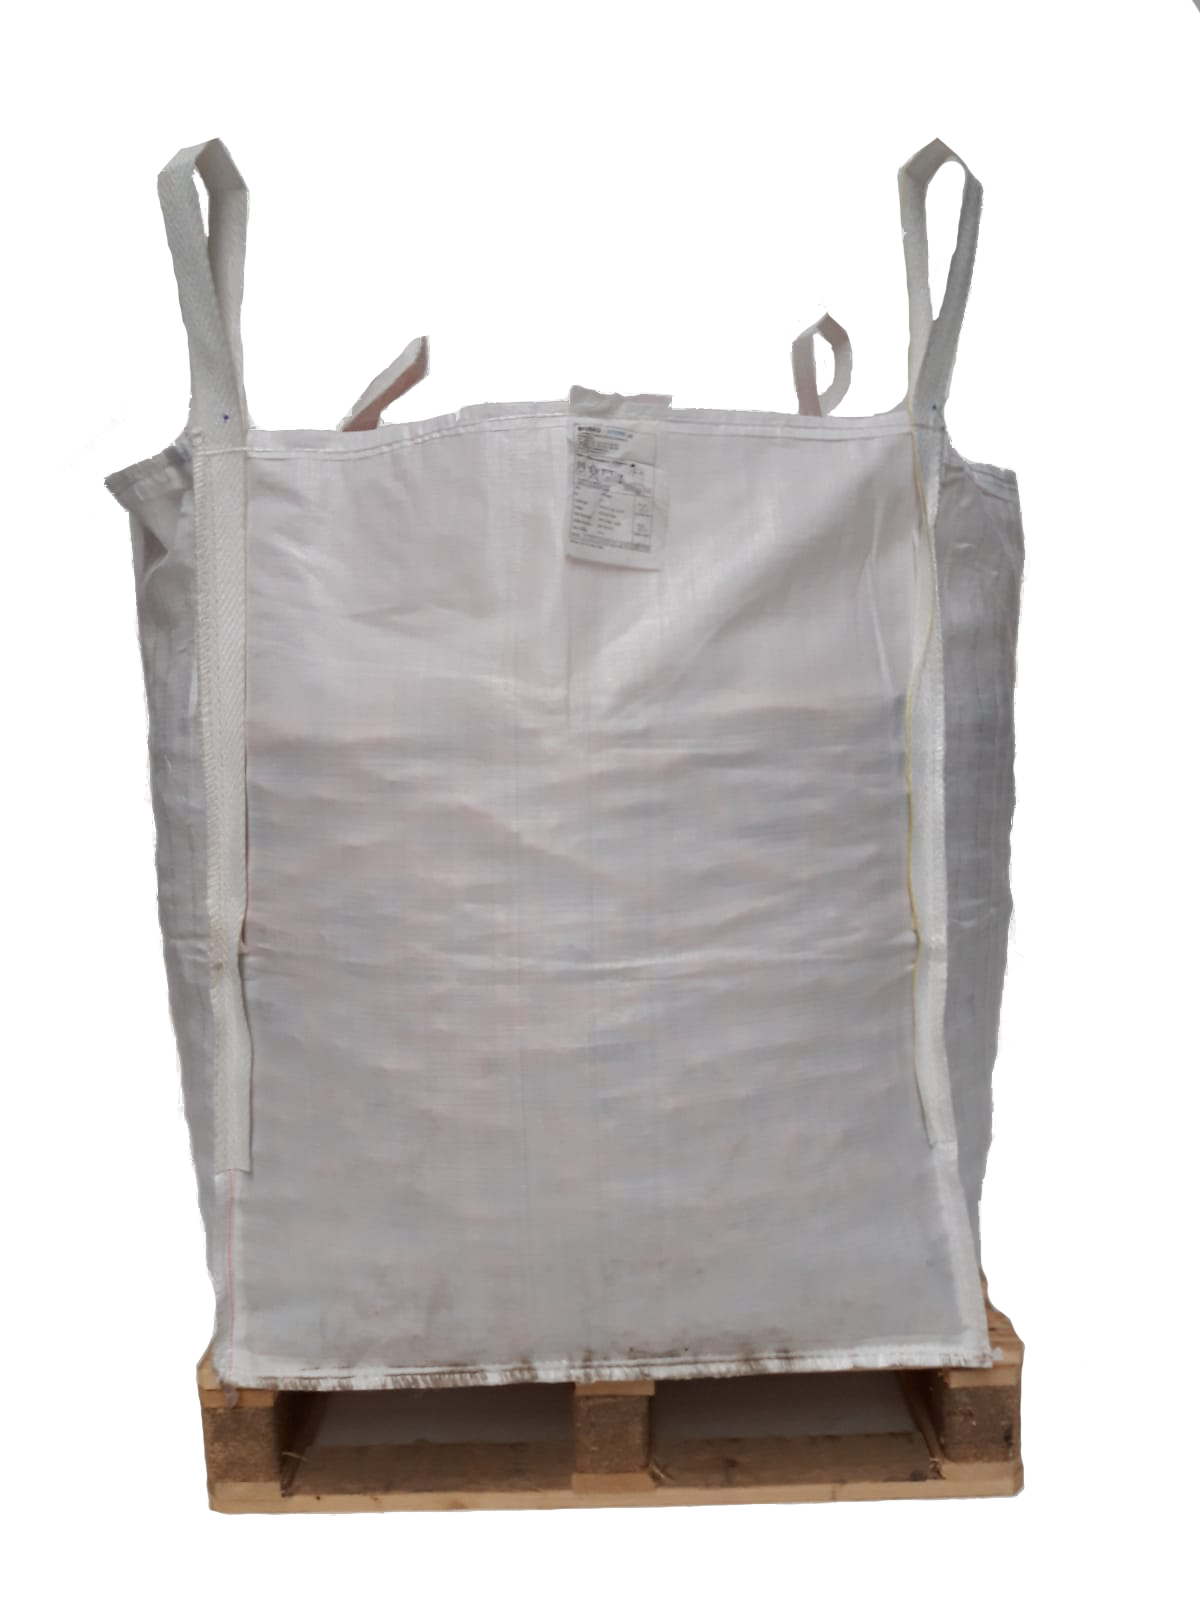 ☀️ 8 x BIG BAG 160 110 75 cm ☀️ Big Bags ☀️ Bigbag ☀️ FIBC ☀️ FIBCs ☀️ 